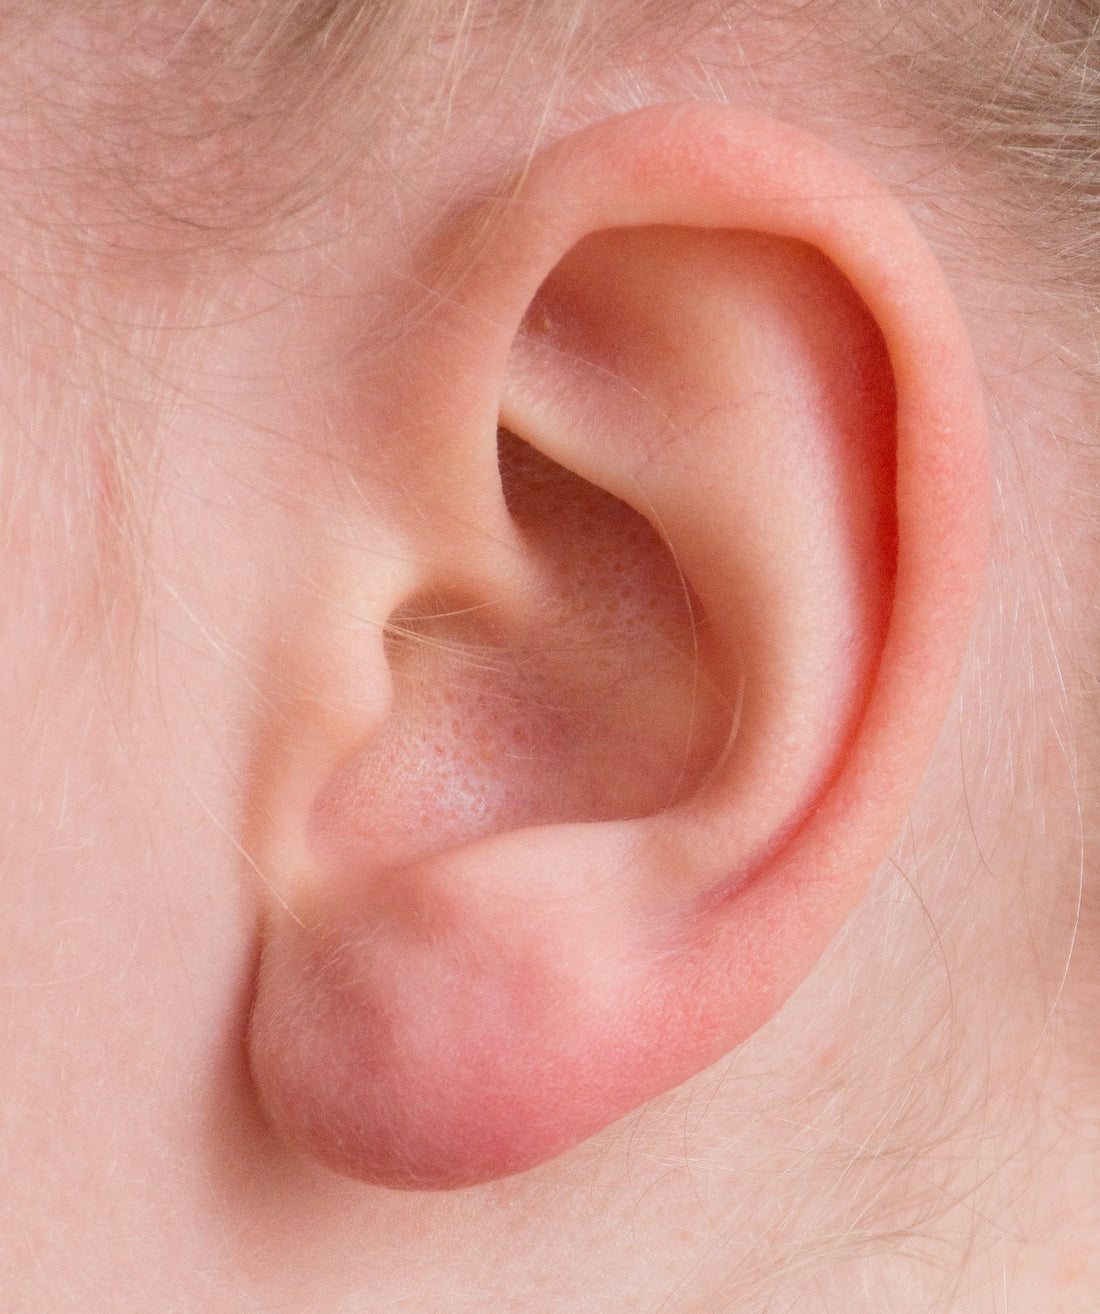 The practiced ear